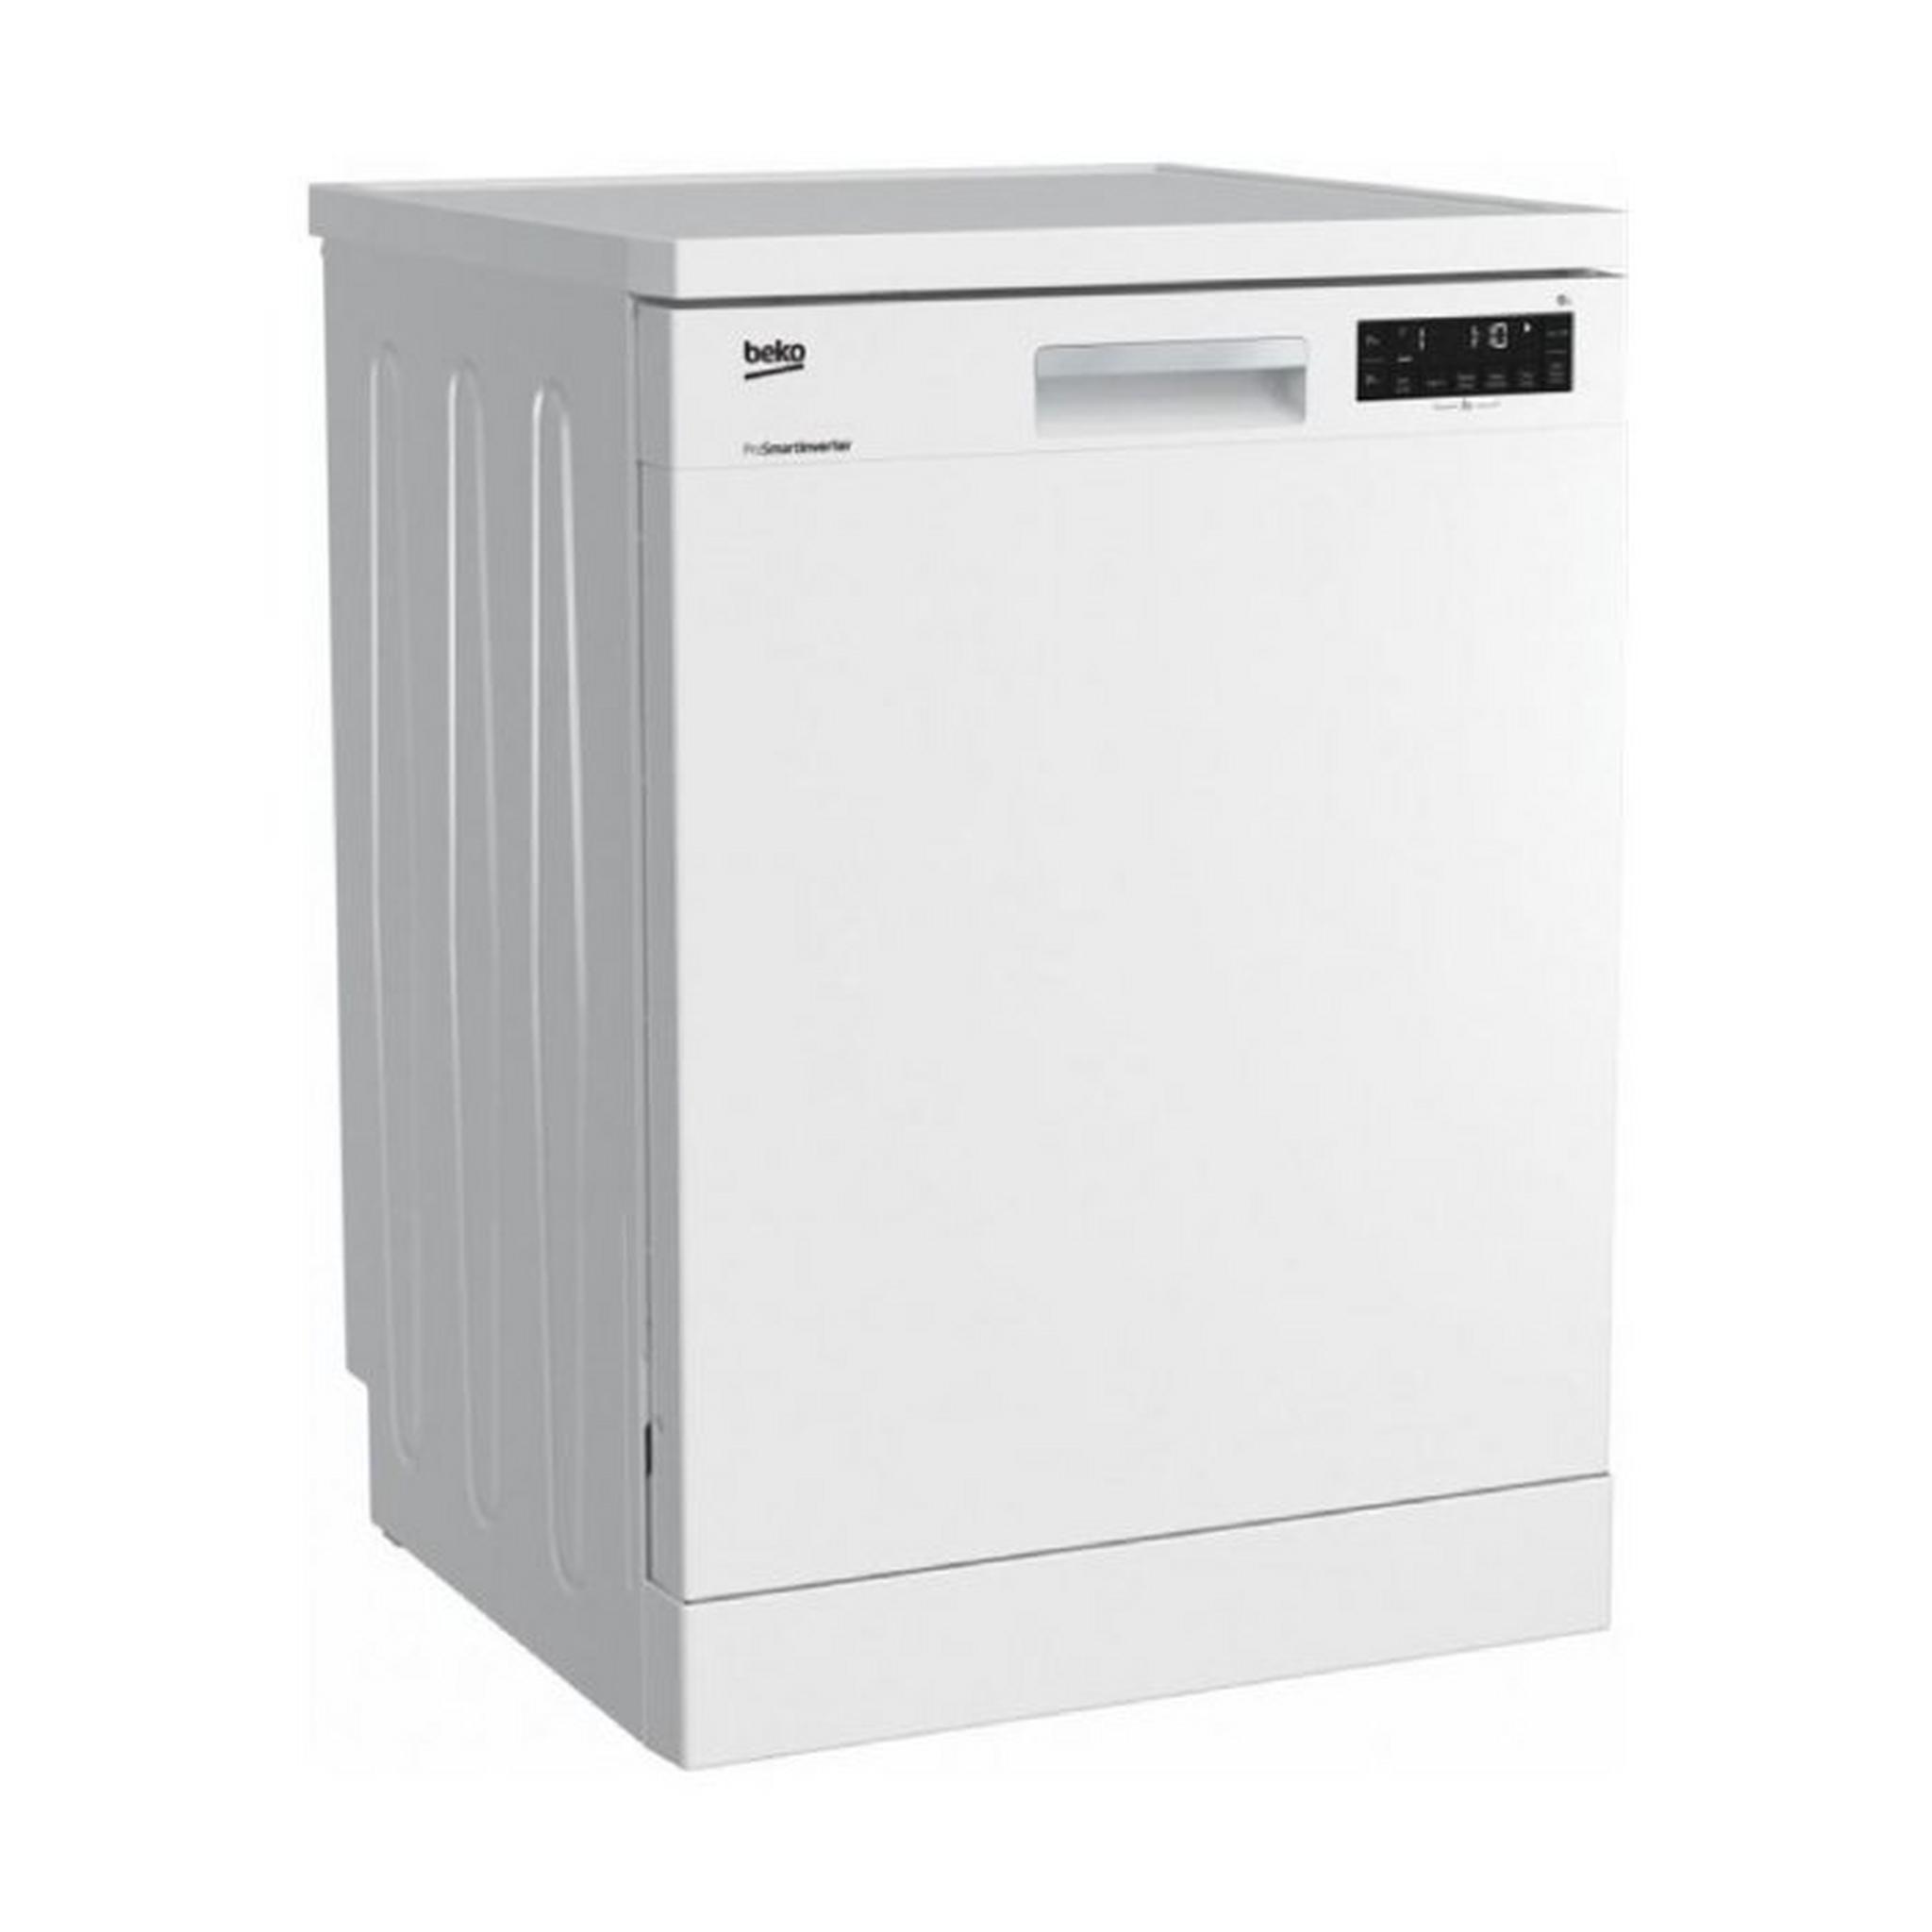 Beko Freestanding Dishwasher, 5 Programs, 13 Settings, DVN05320W – White